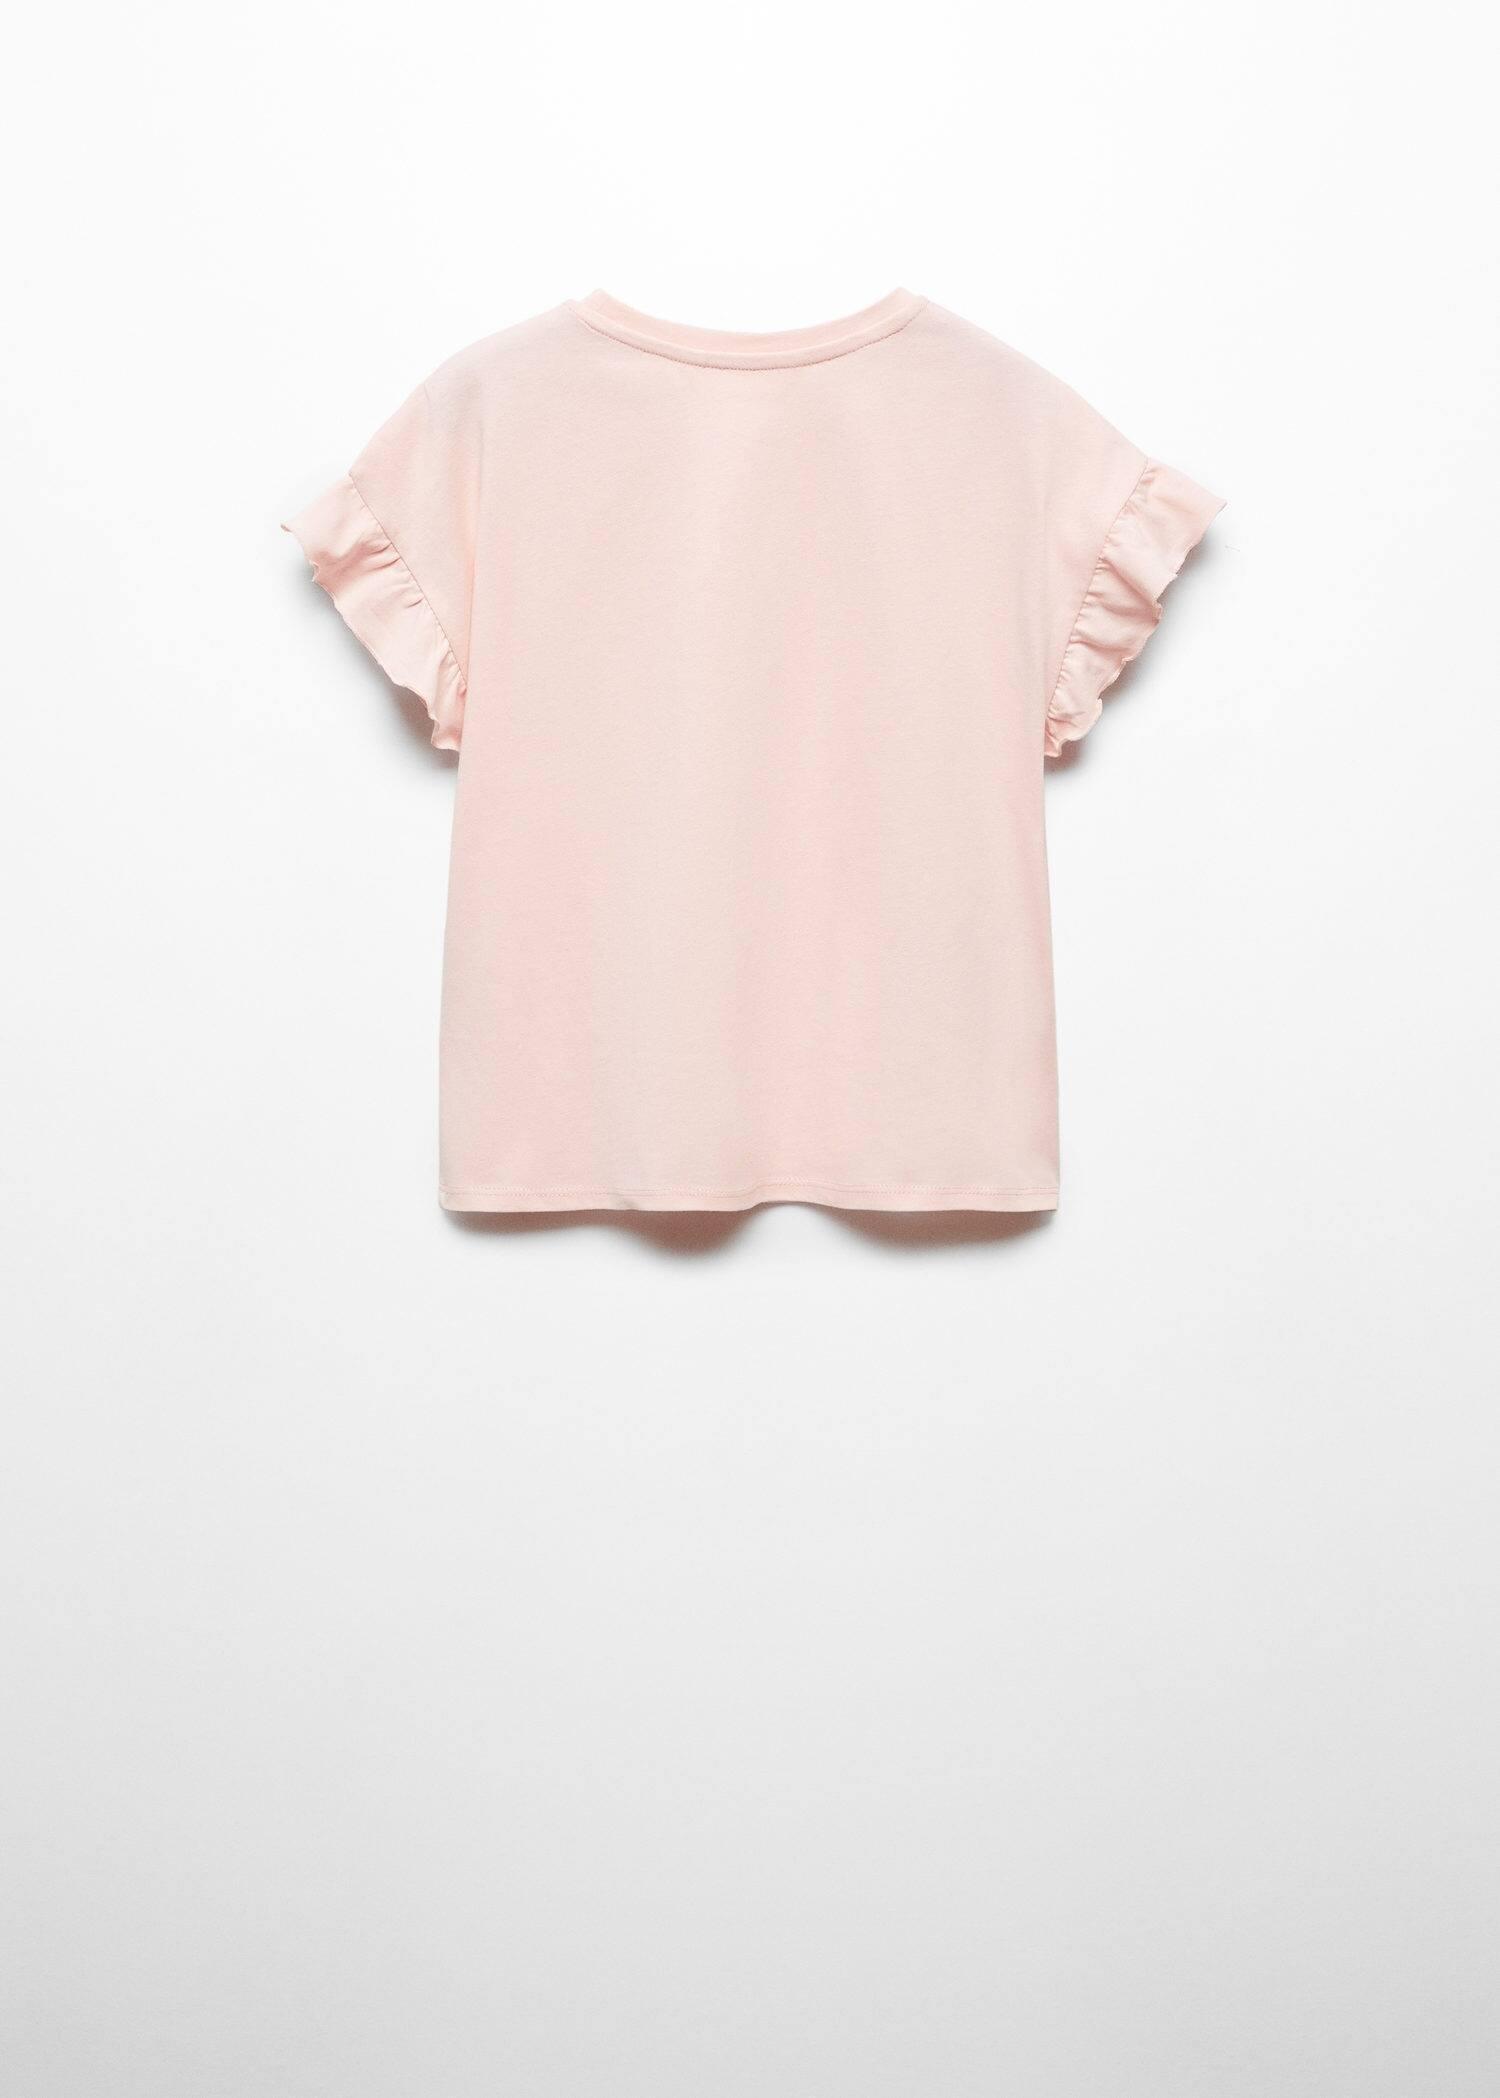 Mango - Pink Printed Message T-Shirt, Kids Girls